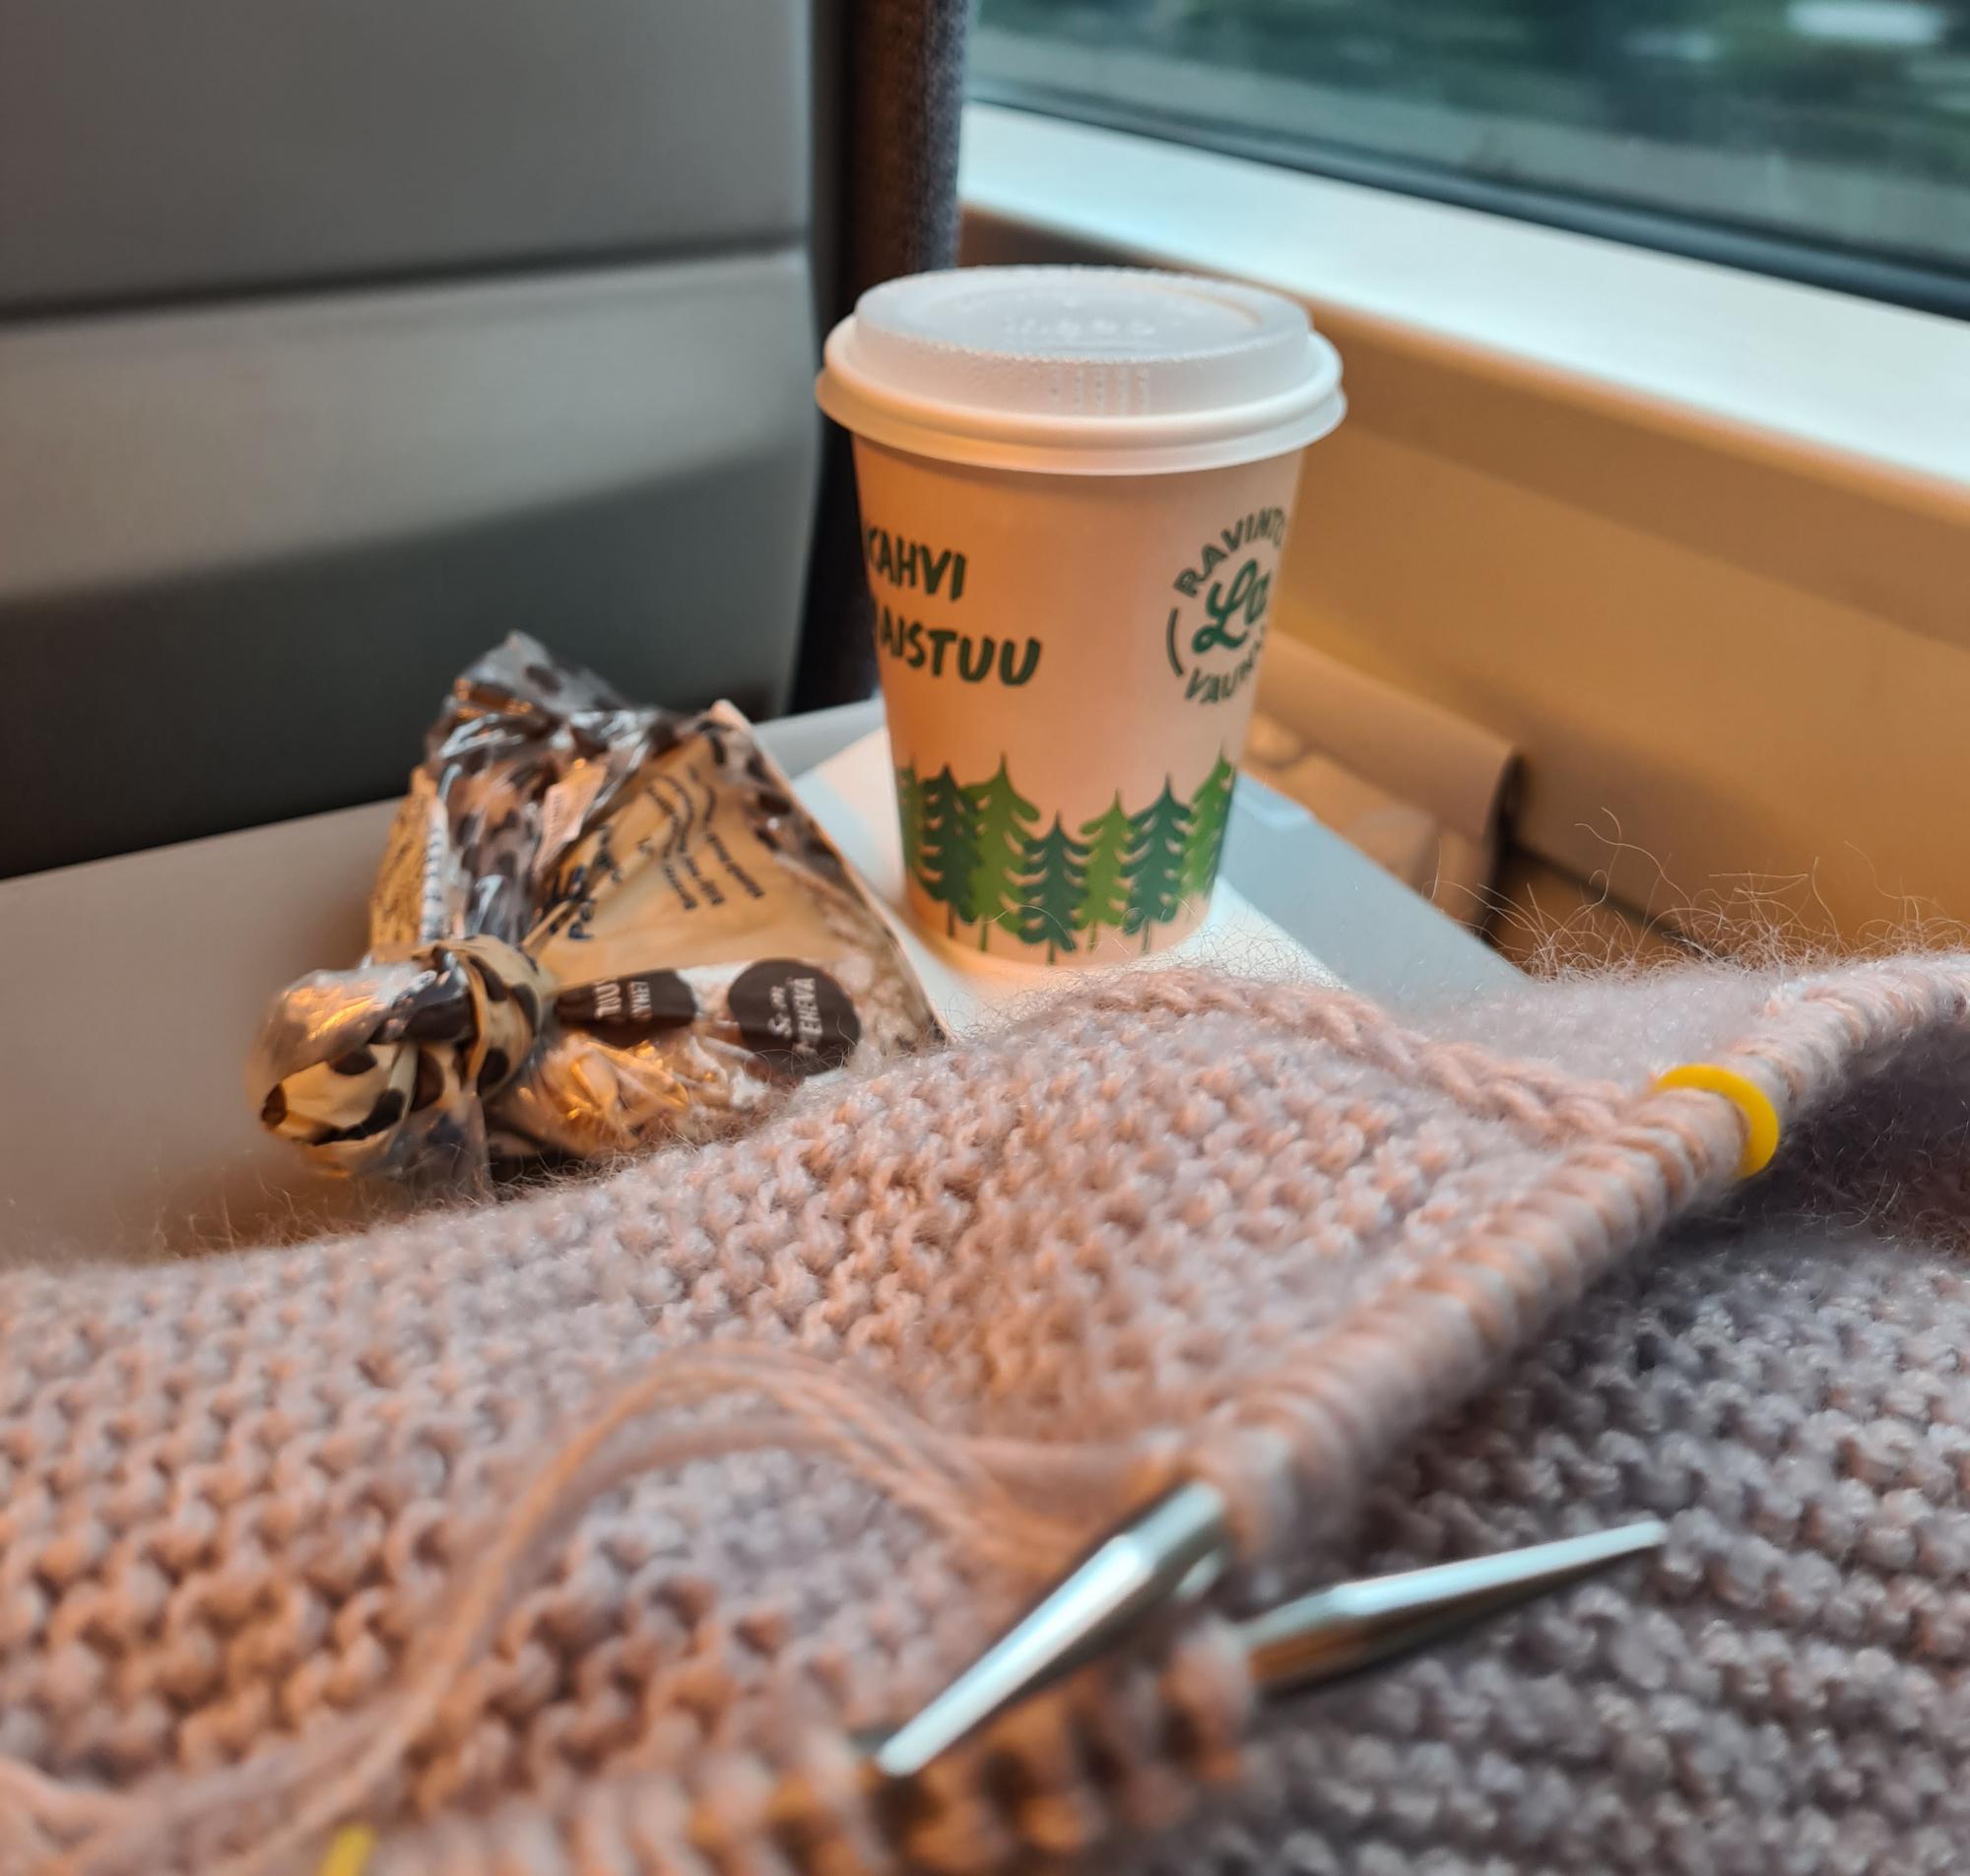 Neuletyö, eväsleipä pussissa ja kahvimuki junan pöydällä. Taustalla junan ikkkuna ohi vilisevä maisema.